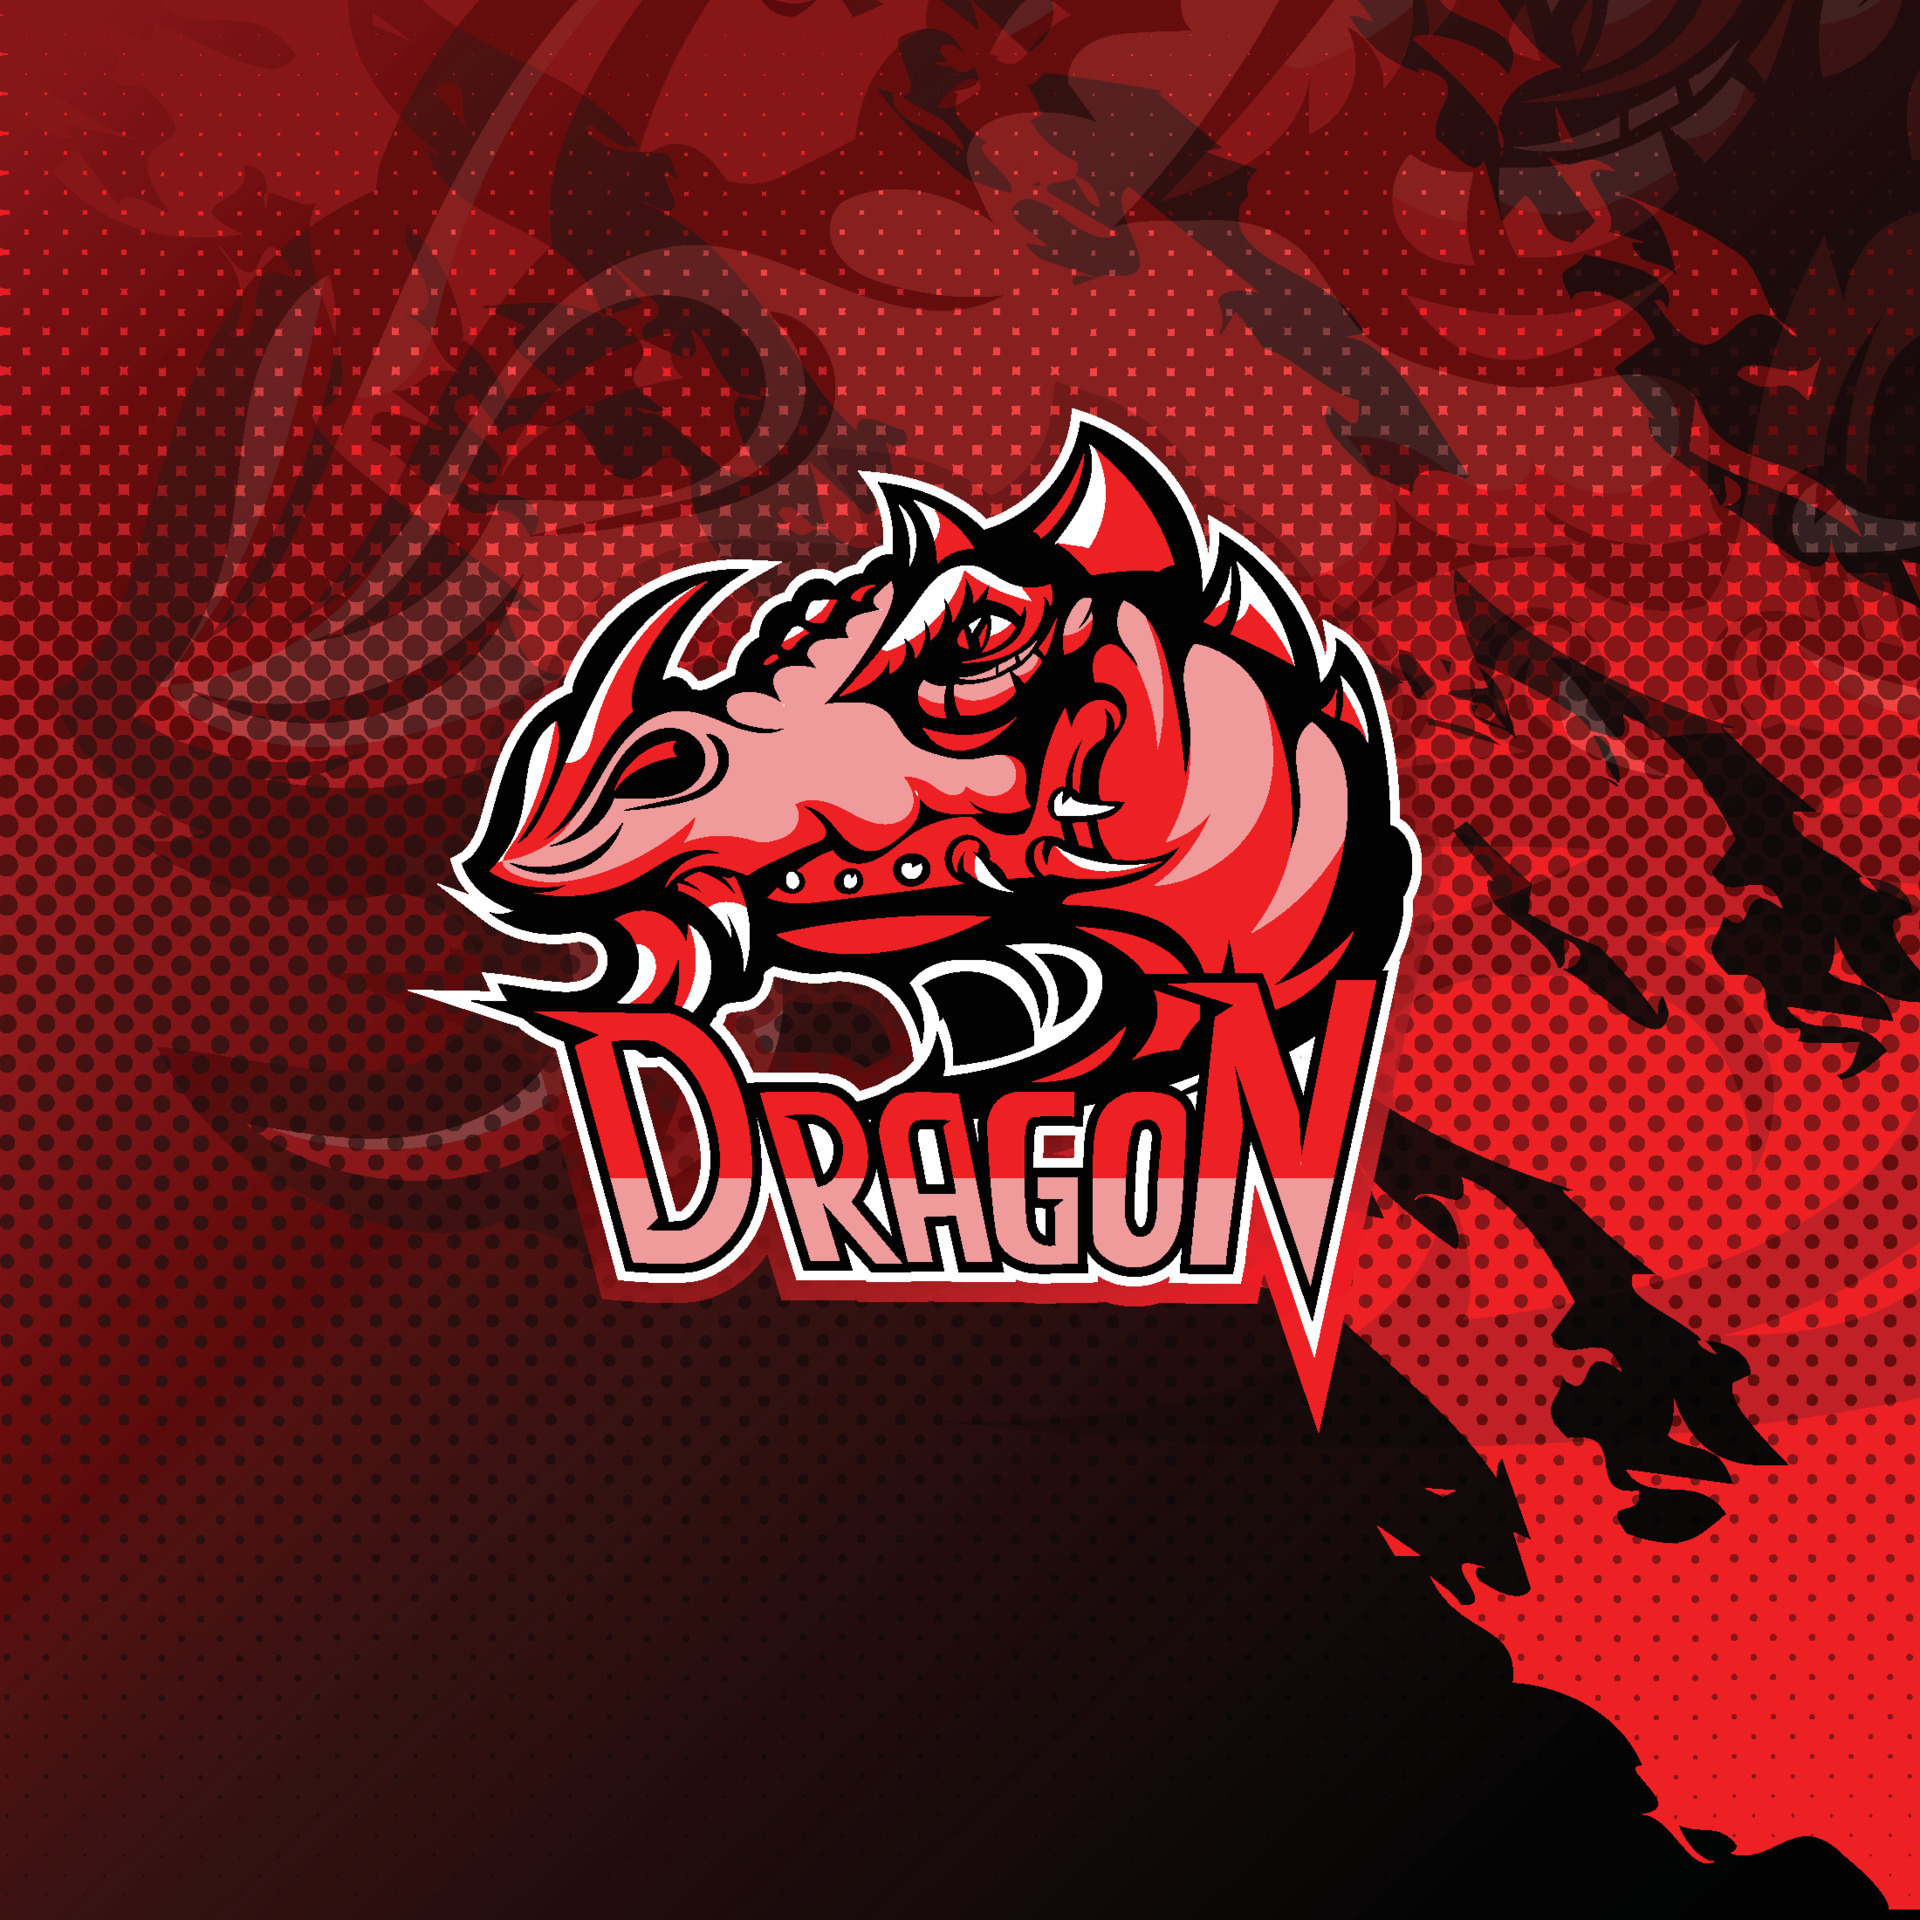 Jogo do logotipo do mascote do dragão roxo para ilustração da equipe  esportiva e esport